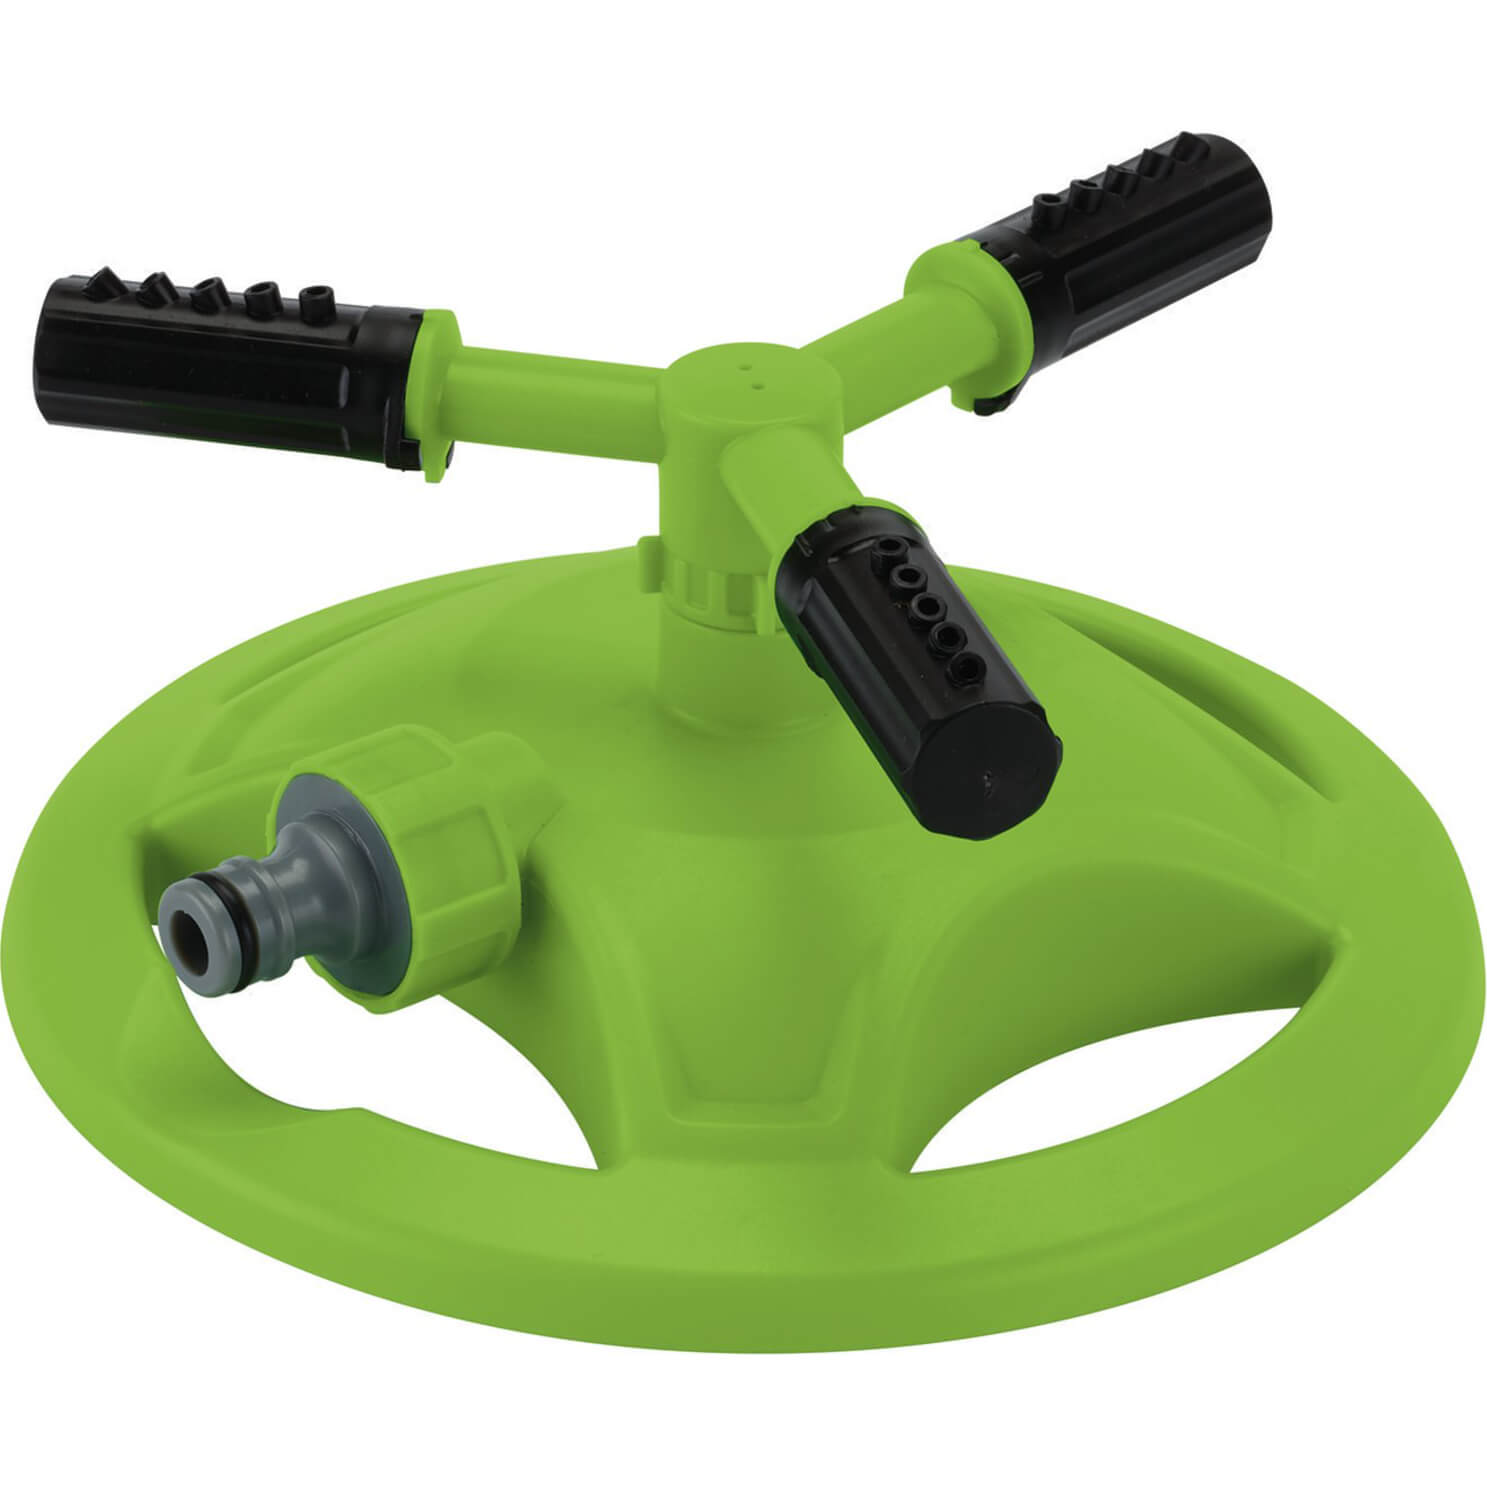 Draper Adjustable Revolving Garden Sprinkler 143m2